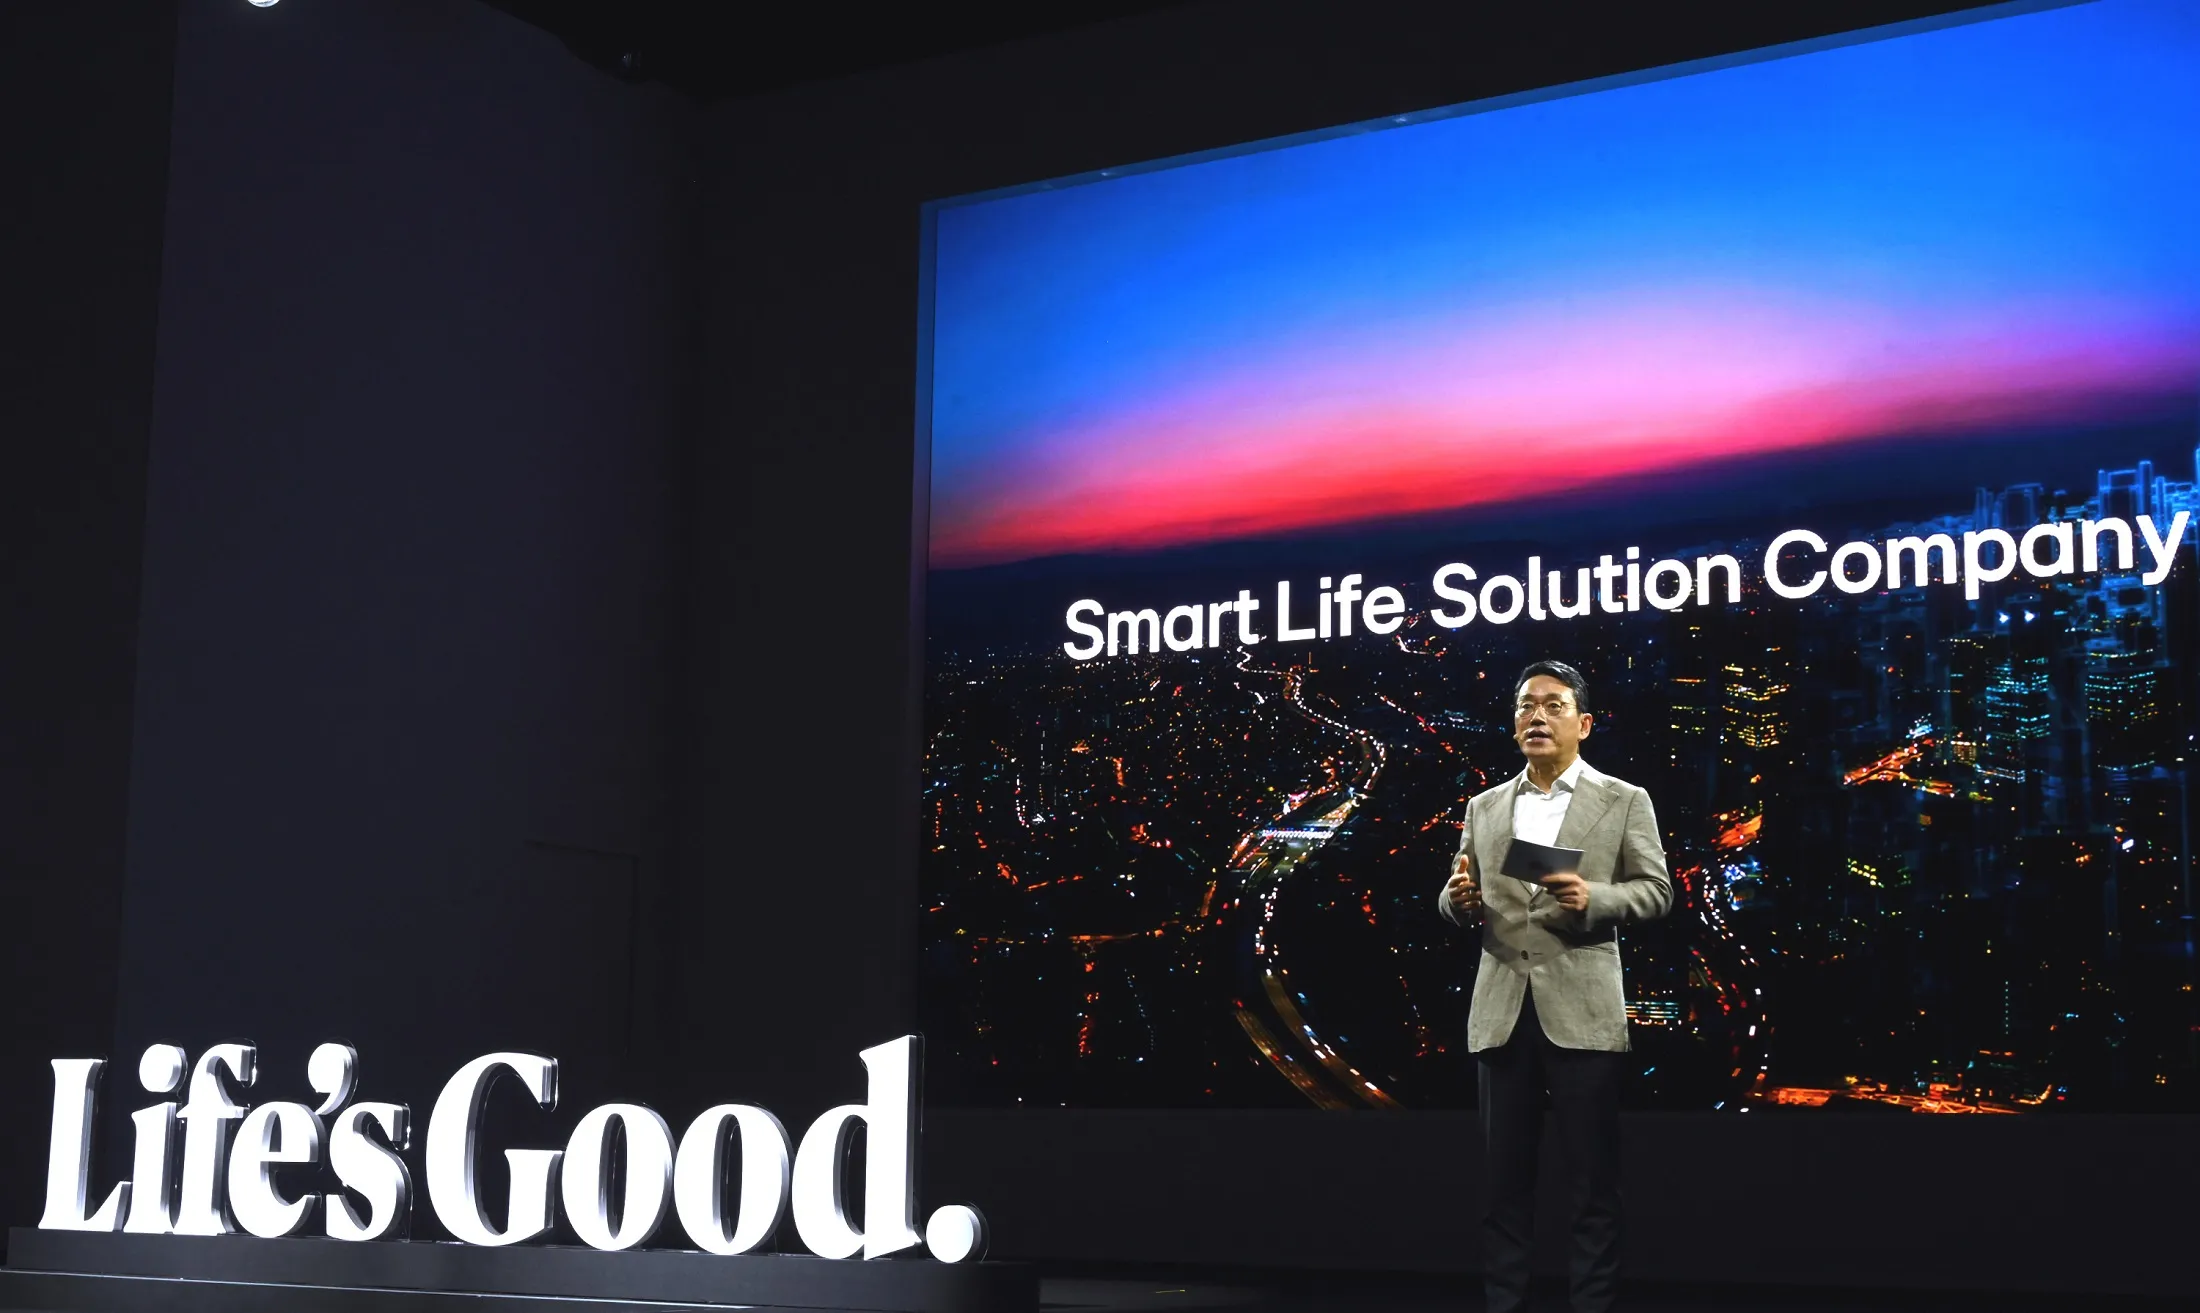 CEO Tập đoàn LG công bố tầm nhìn đưa LG trở thành Công ty chuyên cung cấp giải pháp cuộc sống thông minh